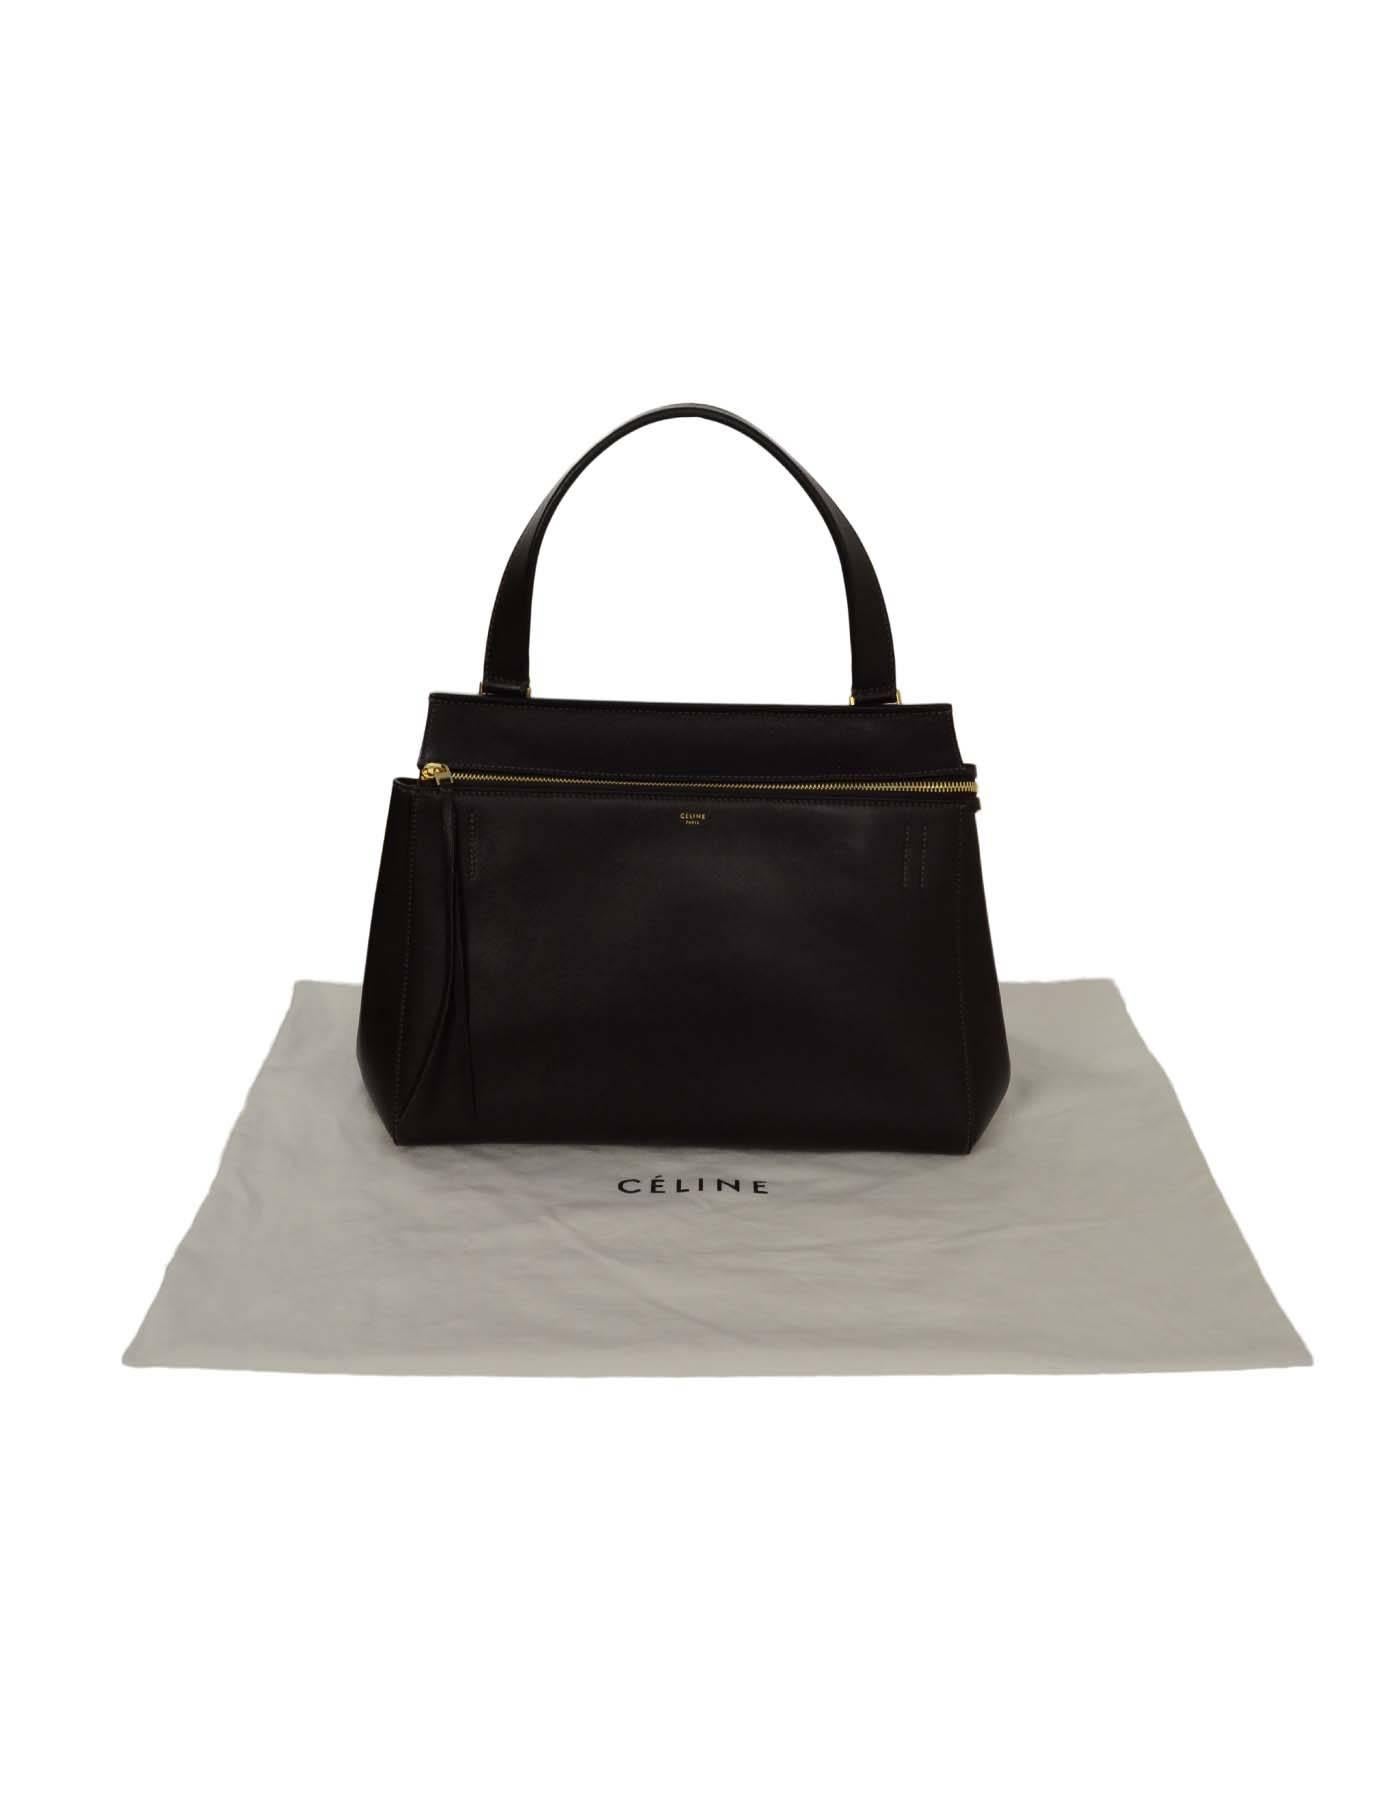 Celine Dark Brown Leather Medium Edge Tote Bag GHW rt $2, 600 3